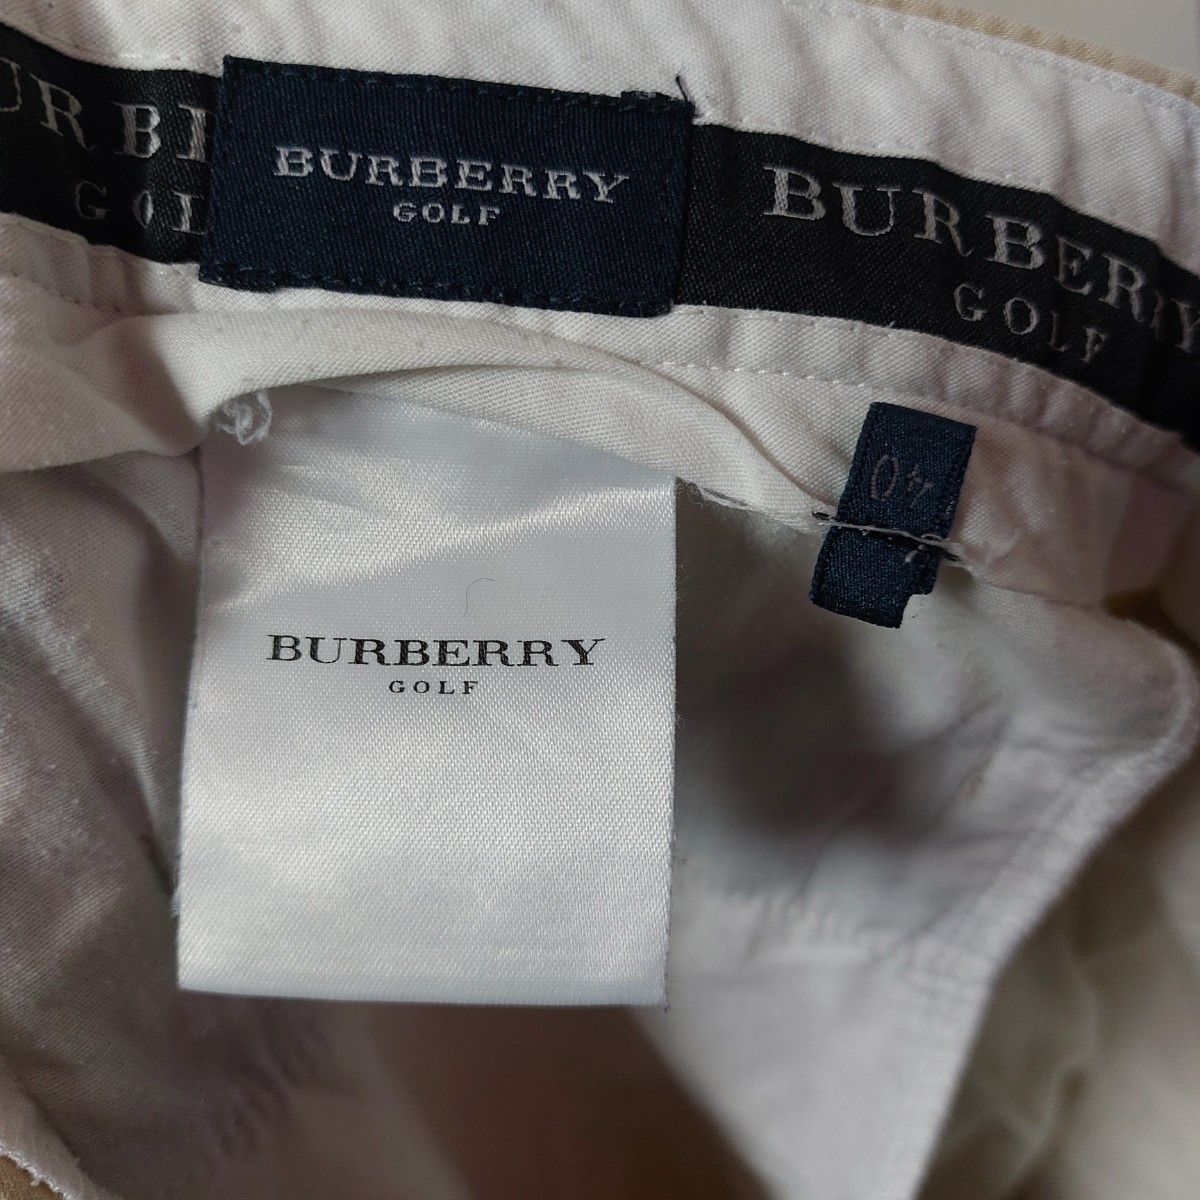  Burberry Golf BURBERRY GOLF широкий tuck слаксы брюки мужской большой размер 40 хаки 06A1302mel